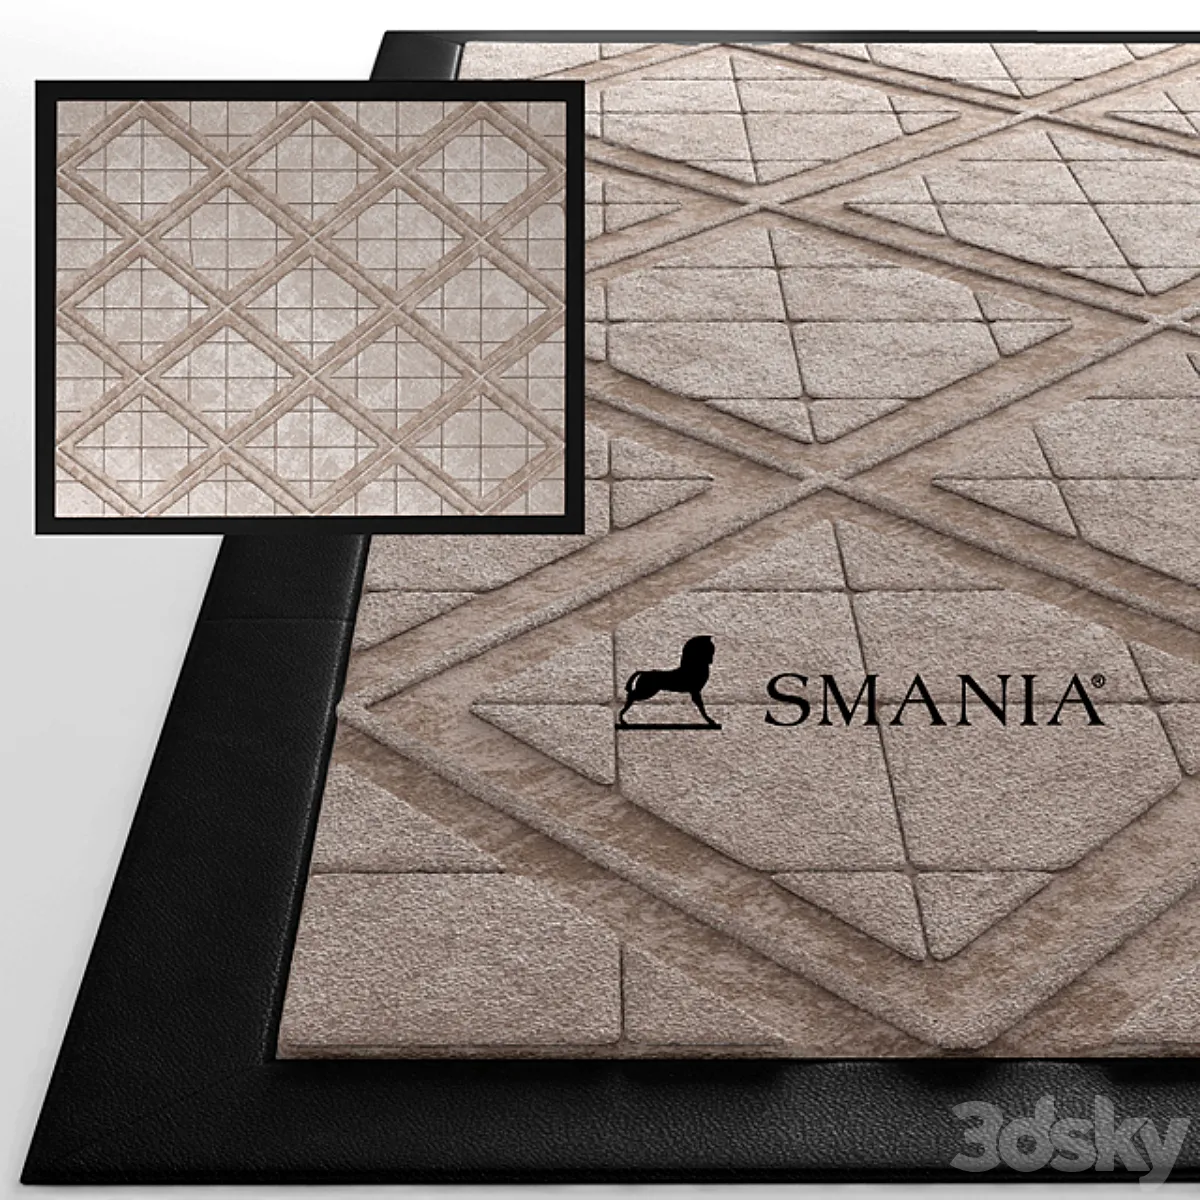  مدل سه بعدی موکت و فرش اسمانیا بارلینگتون تری دی مکس + ویری 3dsky – carpet smania Barlington 